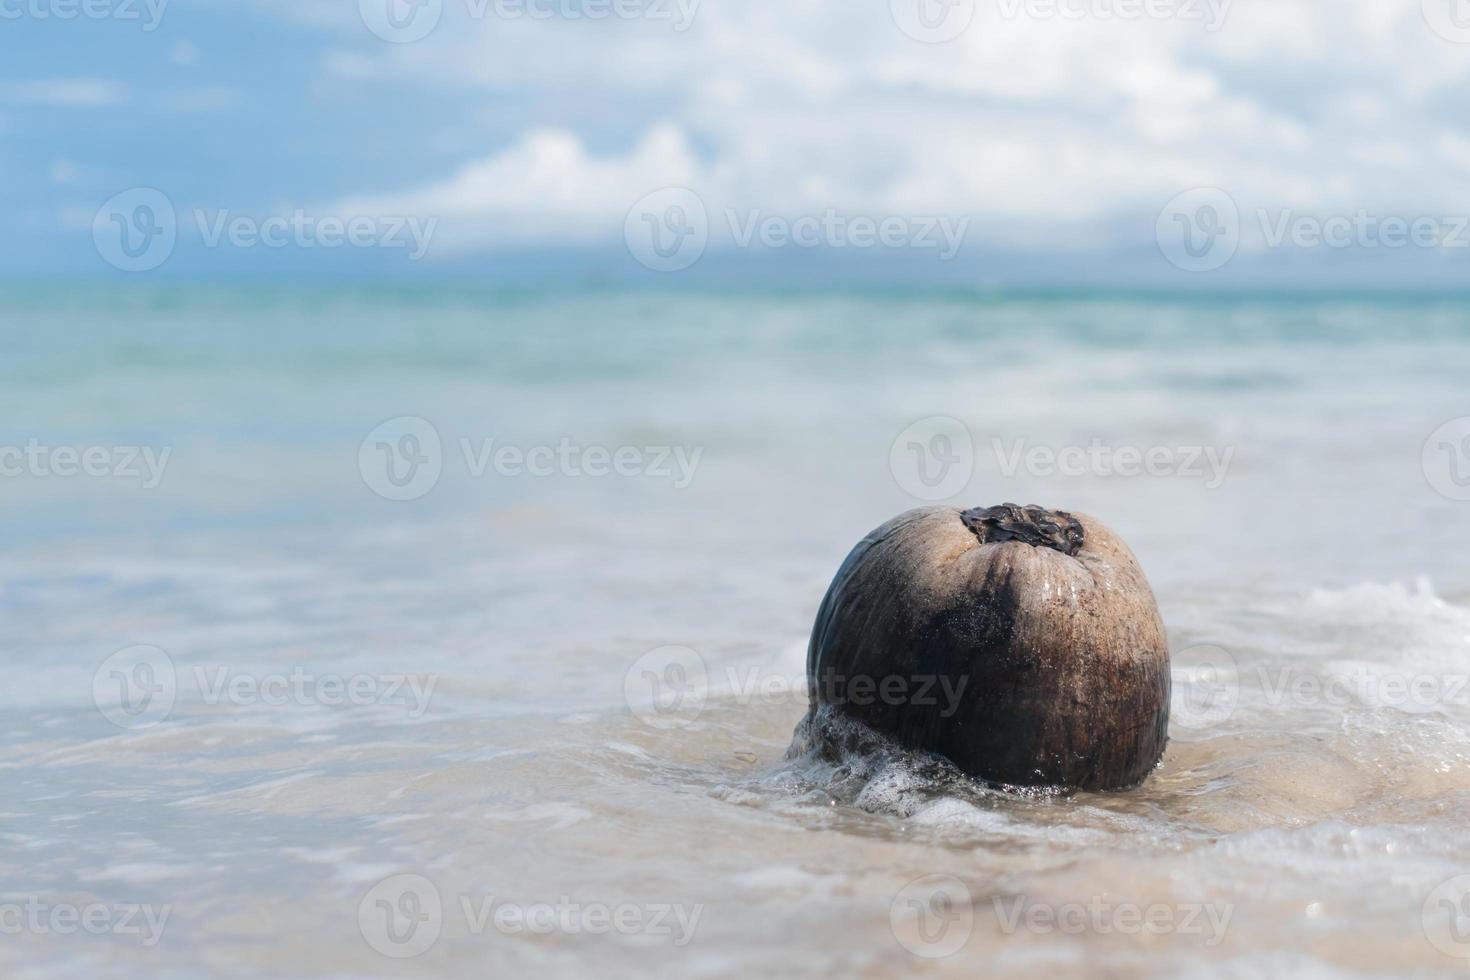 natureza tropical praia limpa areia branca e coco no verão com sol claro céu azul e bokeh. foto